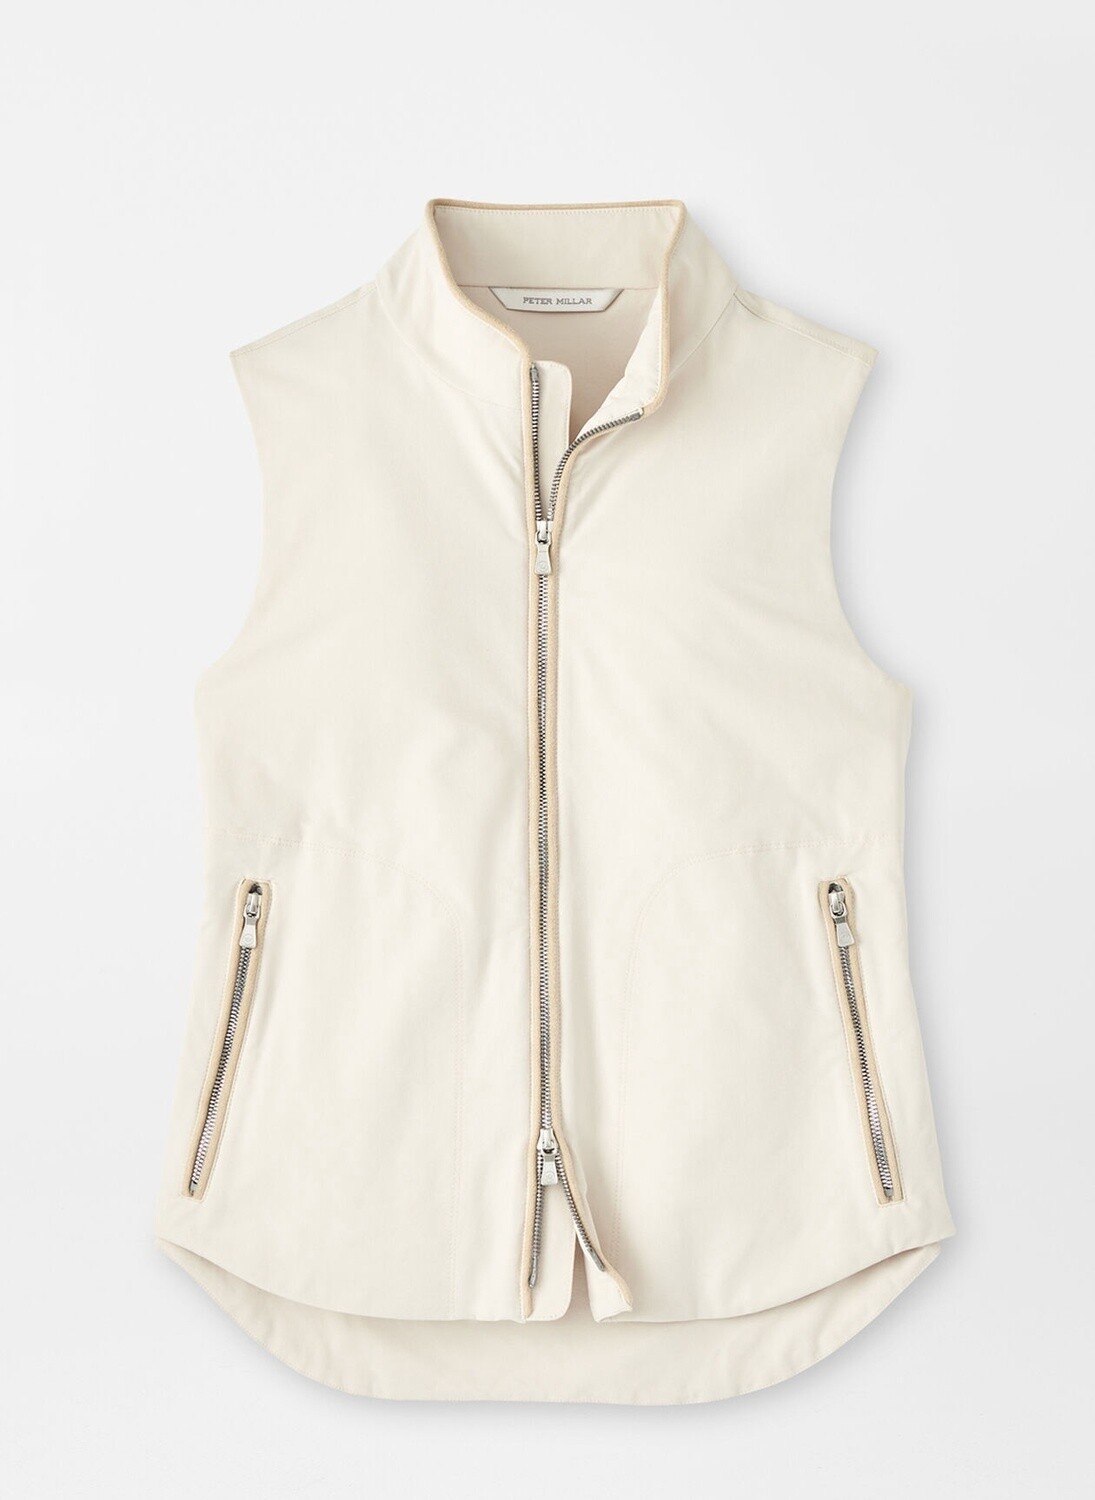 Surge Full Zip Vest, Color: Stone, Size: XS